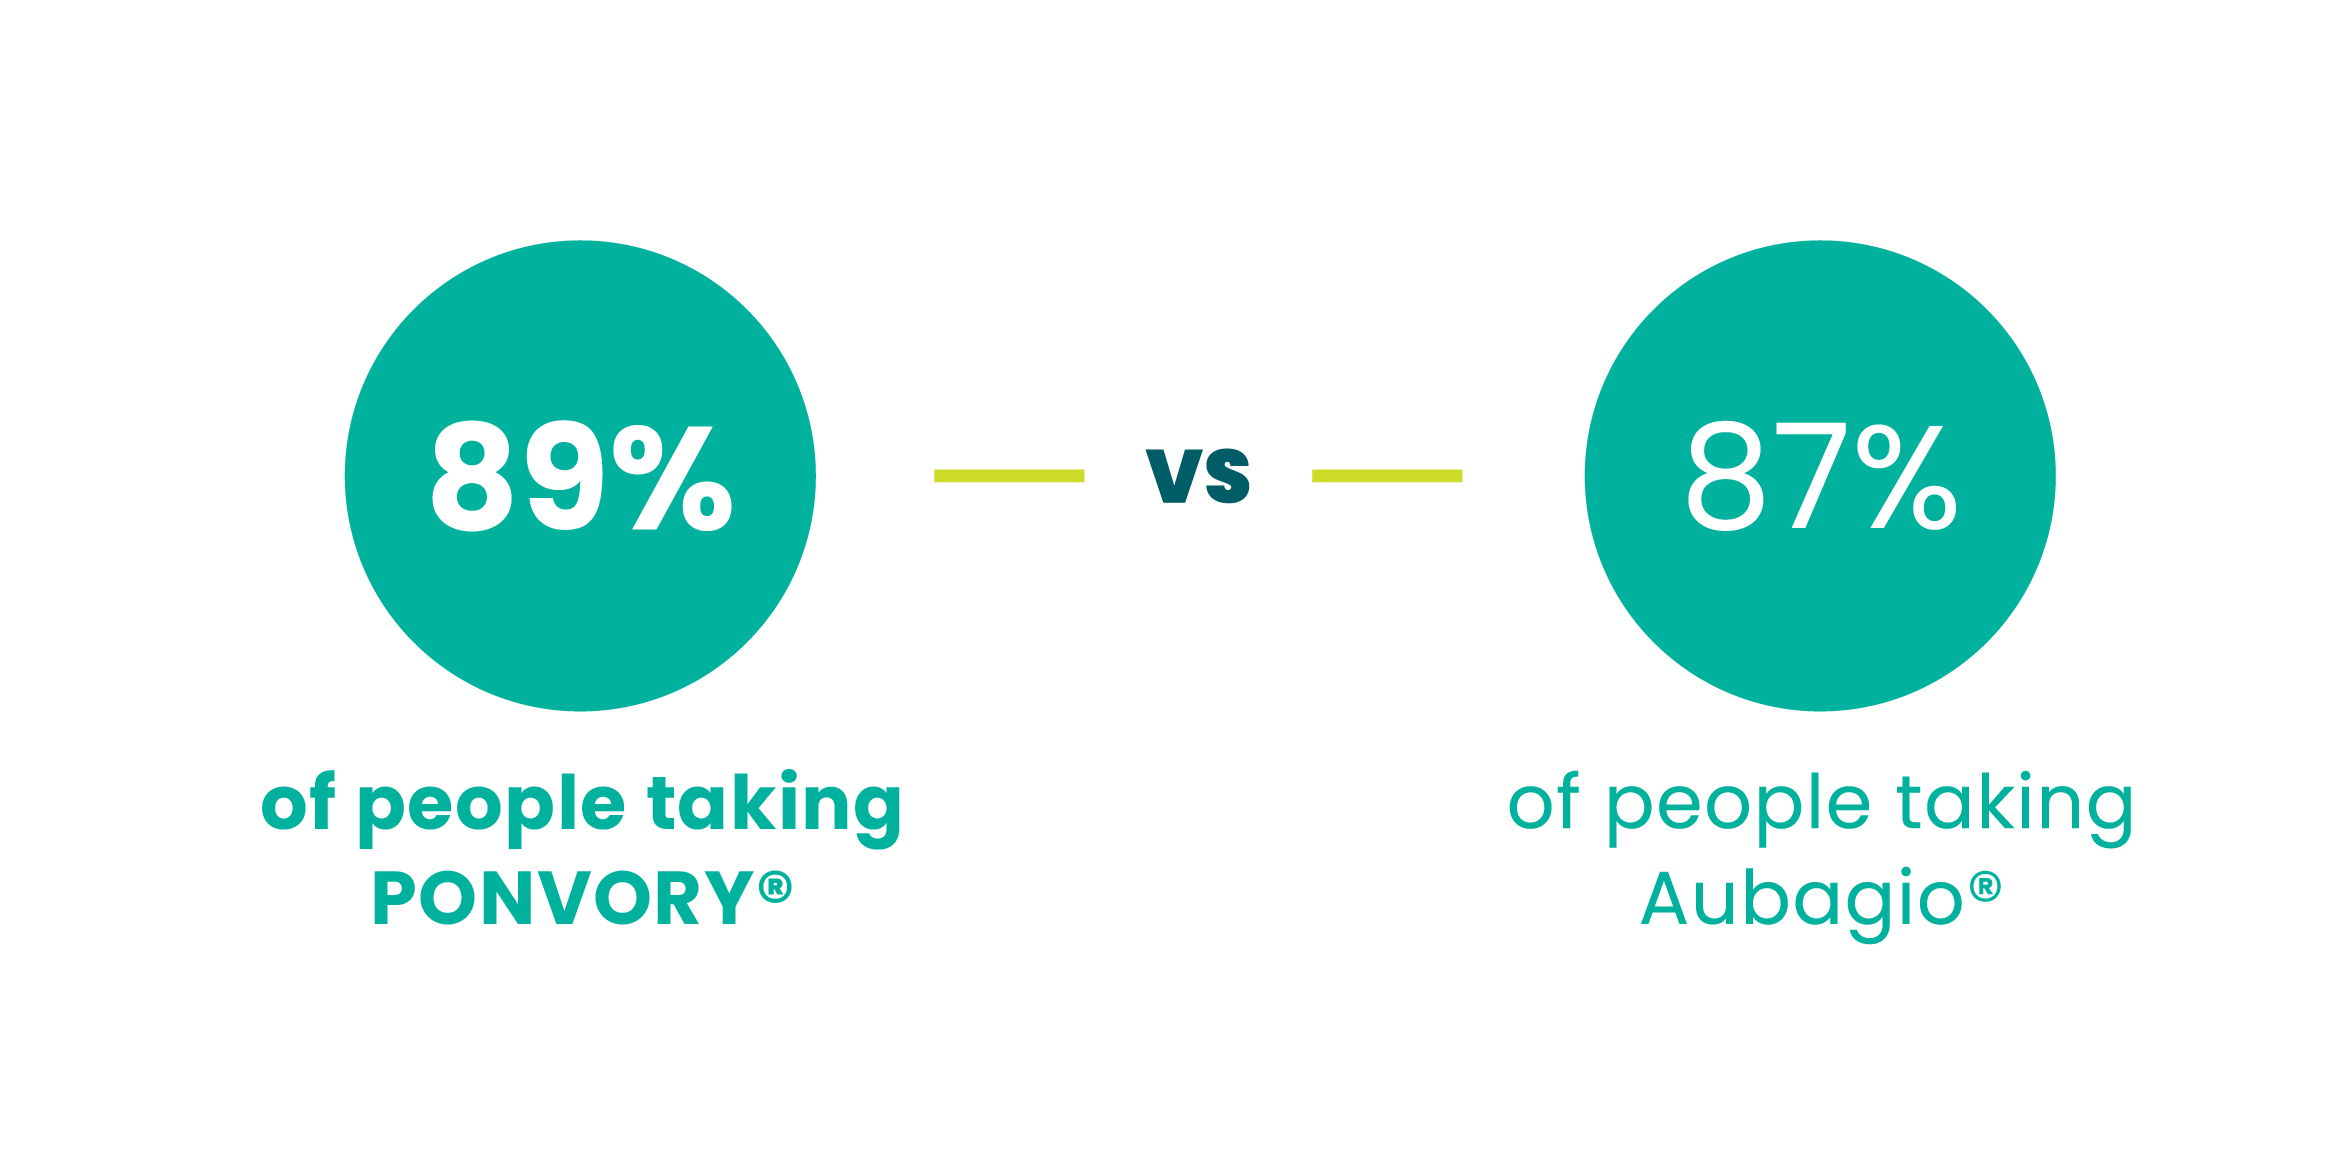 89% of people taking PONVORY® versus 87% of people taking AUBAGIO®